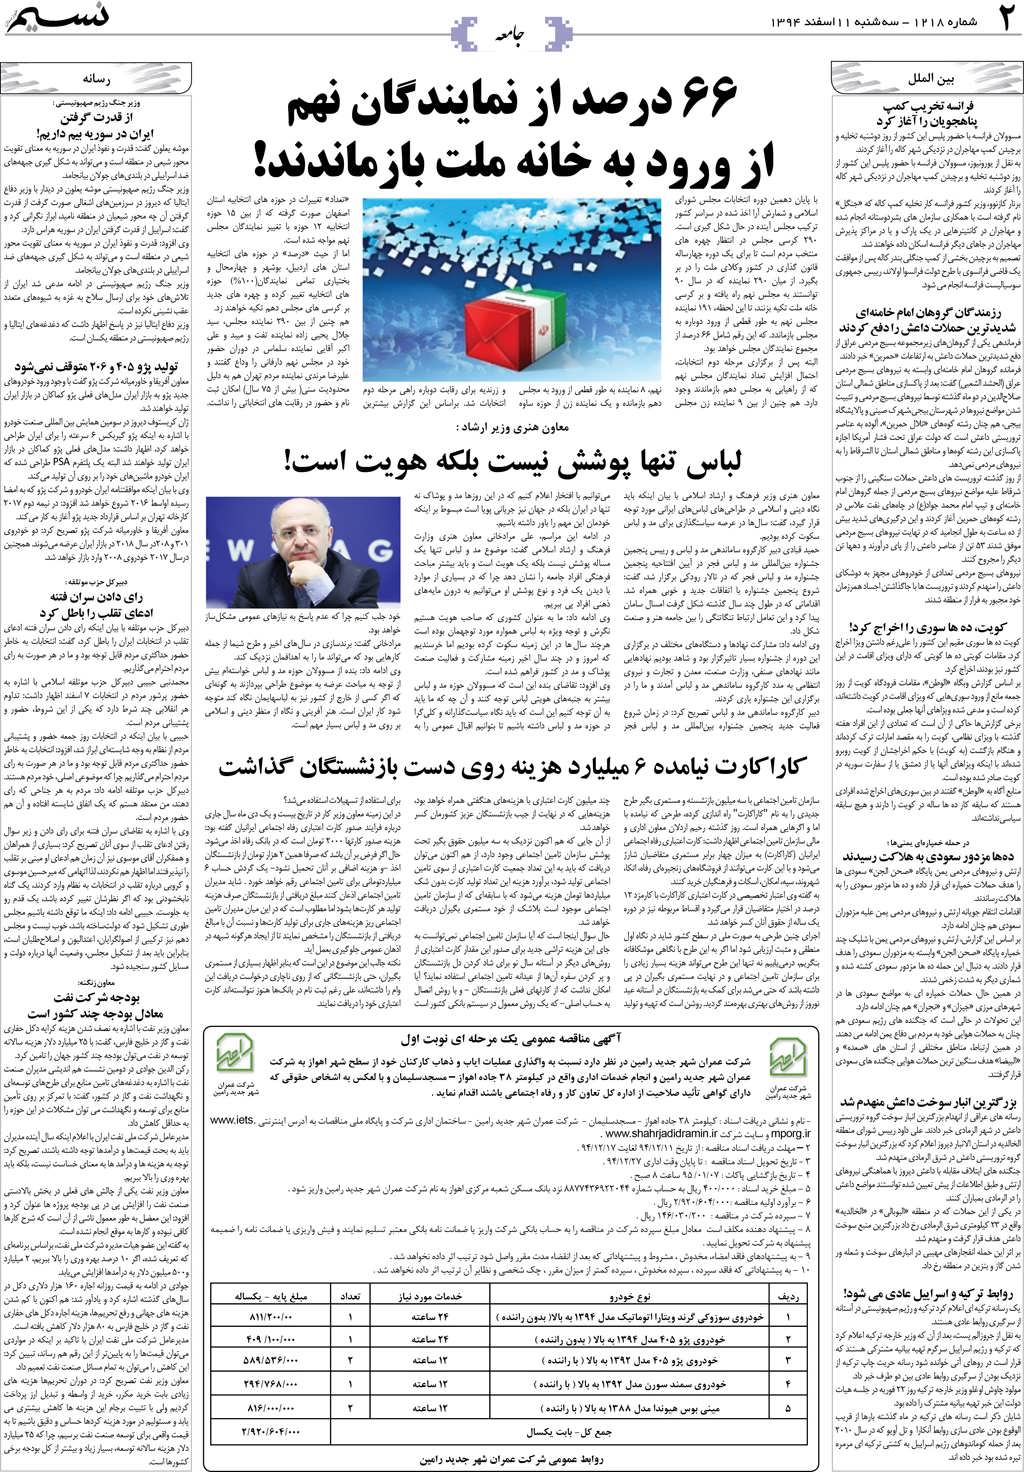 صفحه جامعه روزنامه نسیم شماره 1218